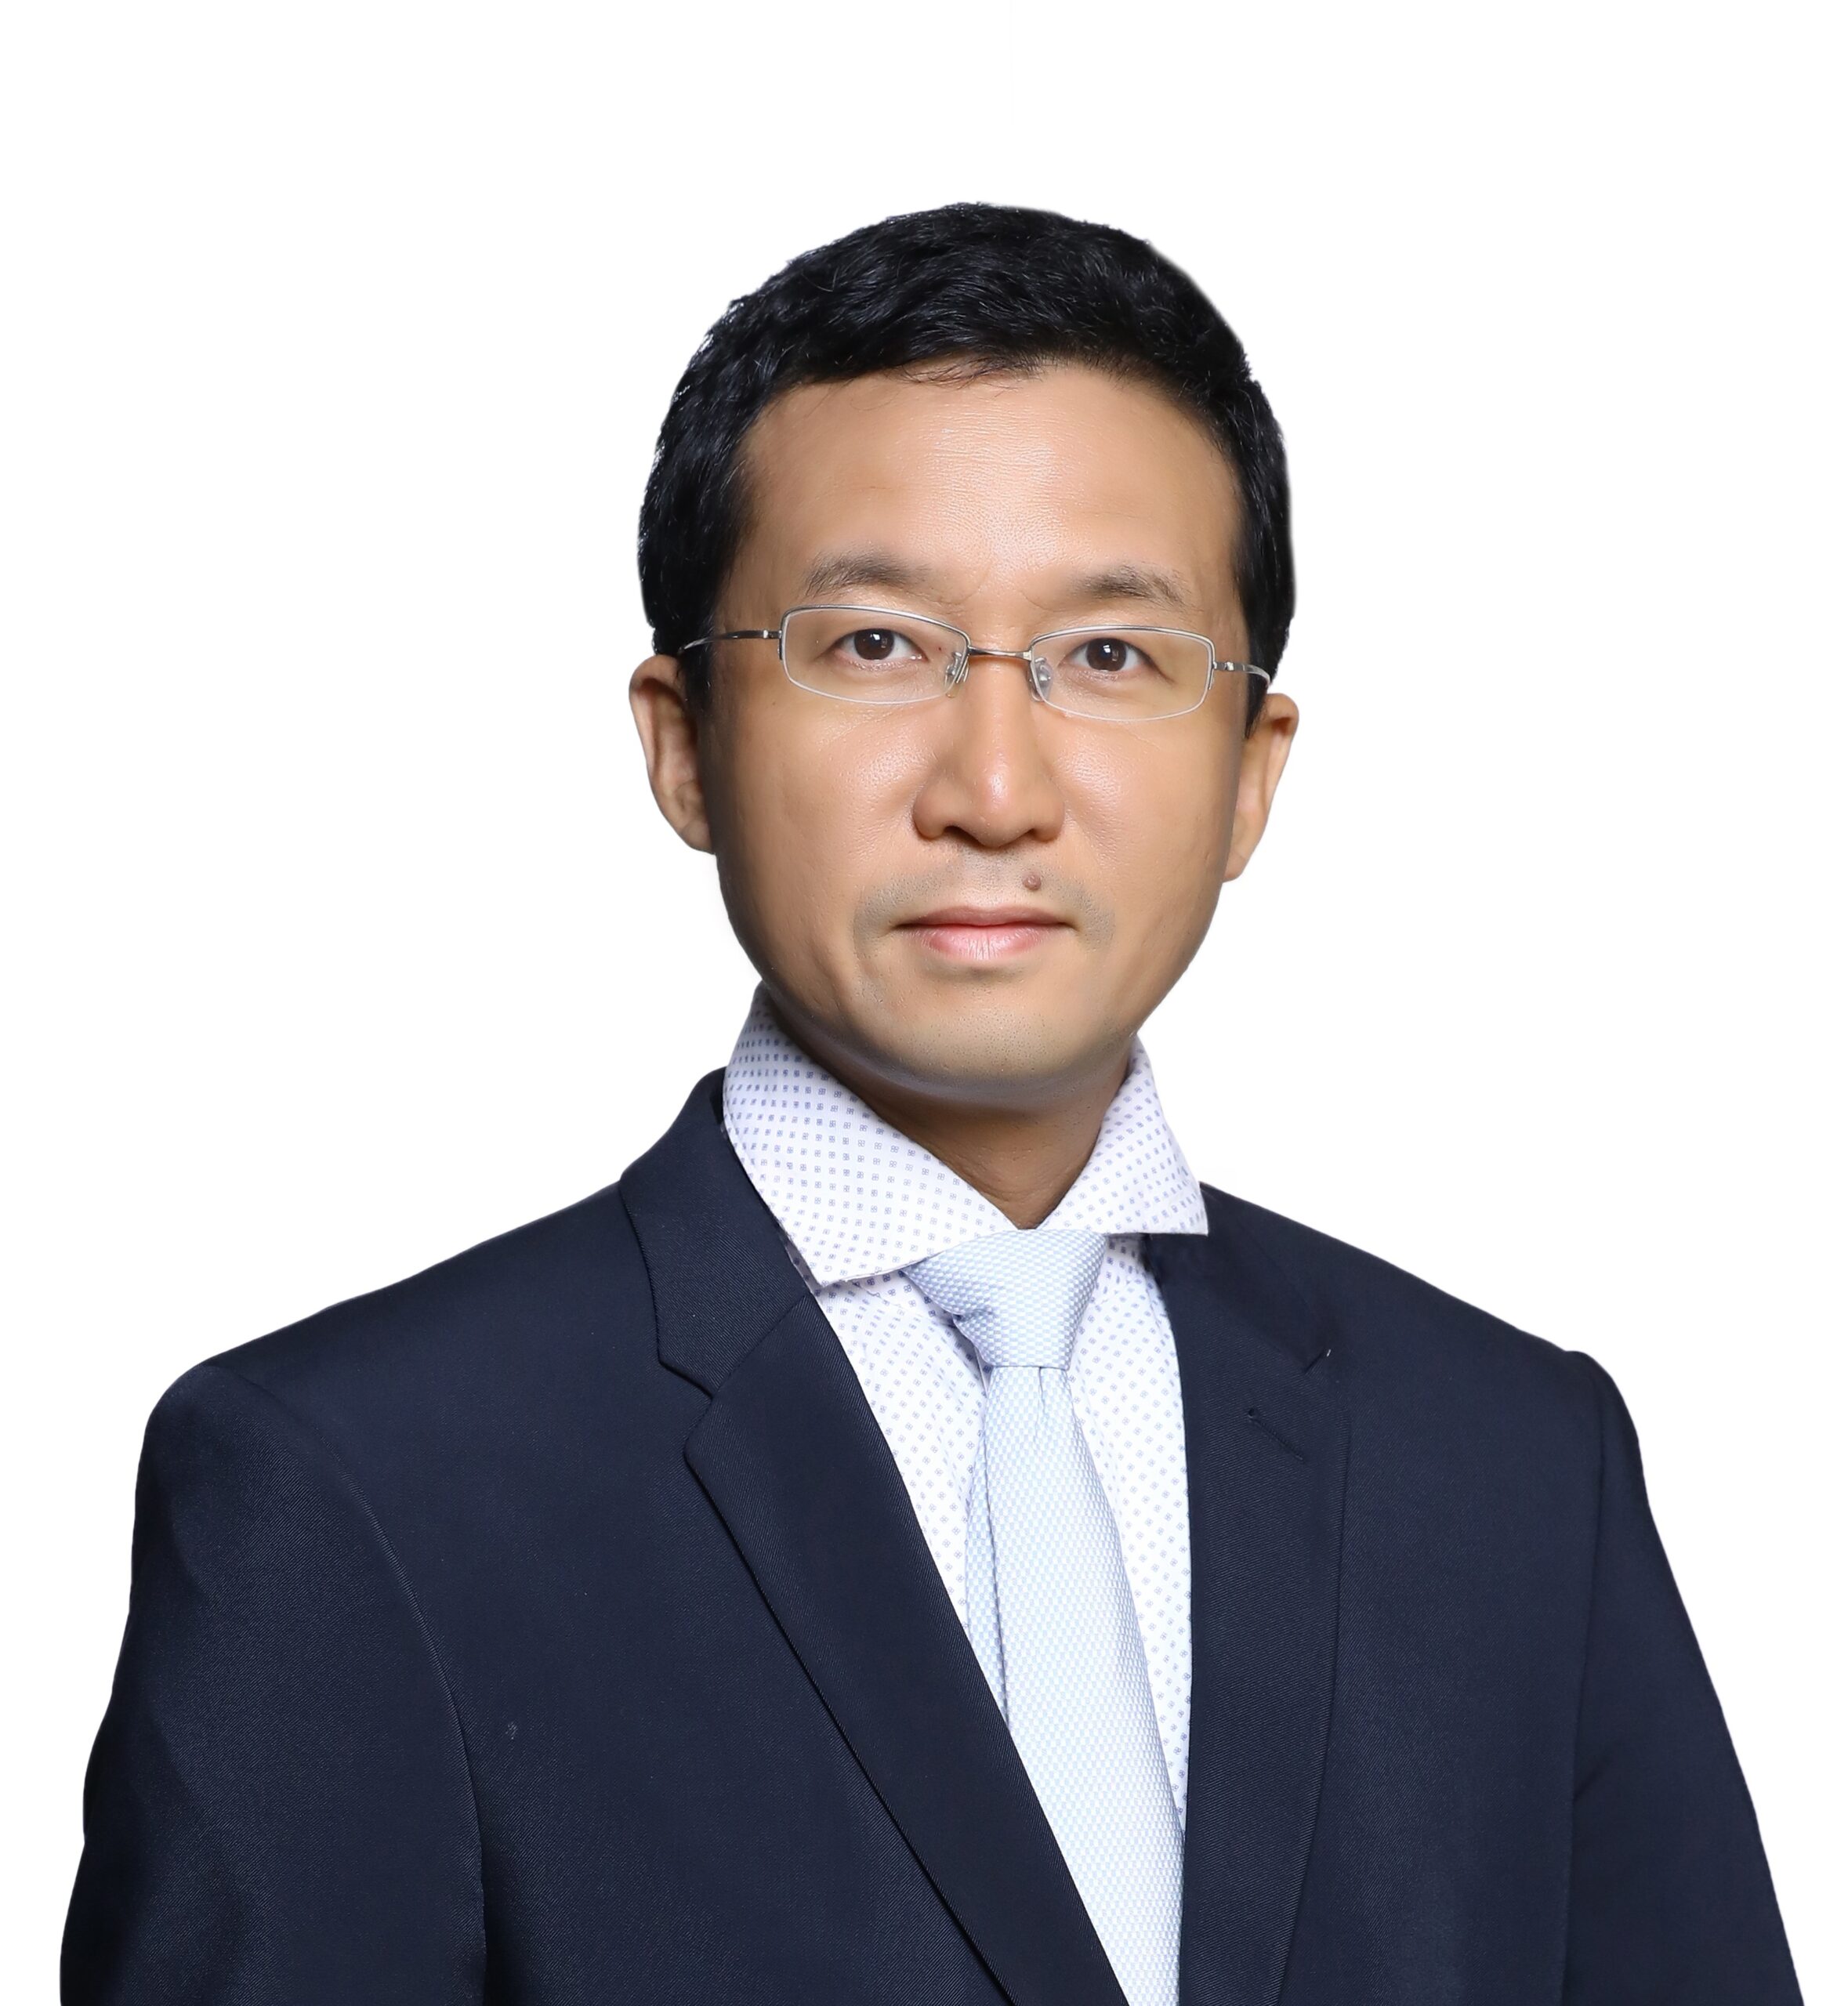 Dr. Zhengxiong (Maso) Yang